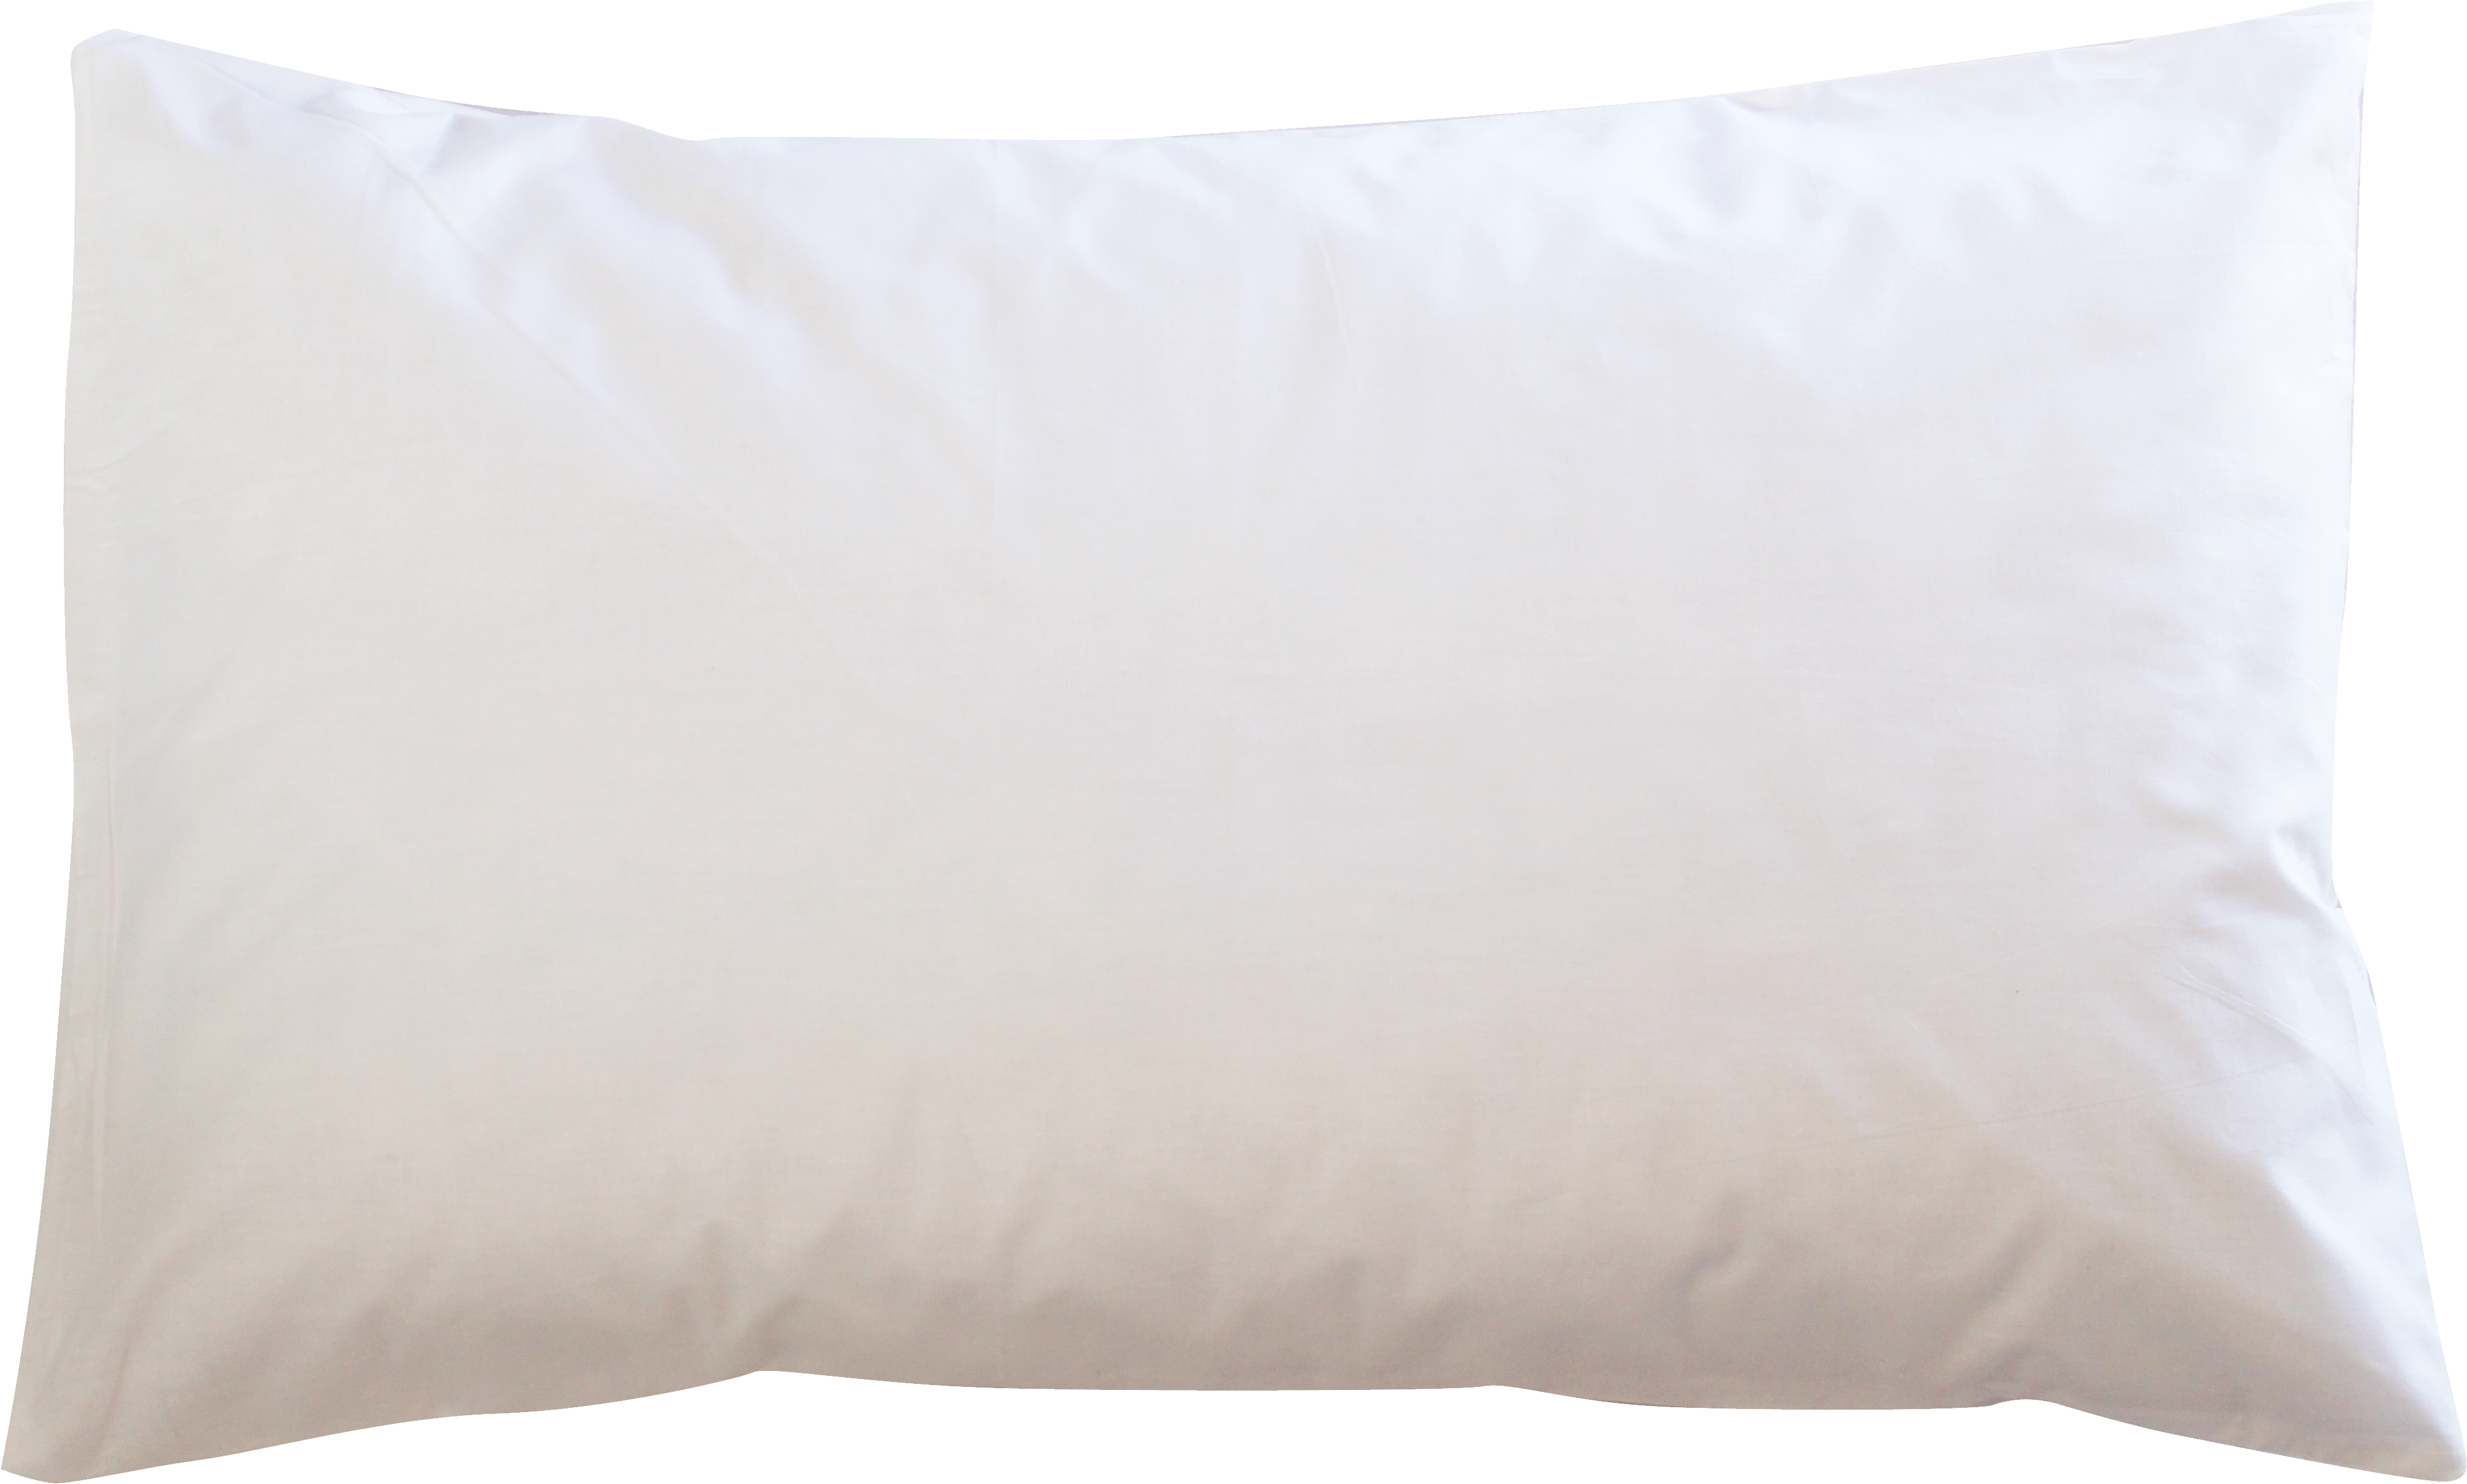 Белая подушка PNG изображения фон